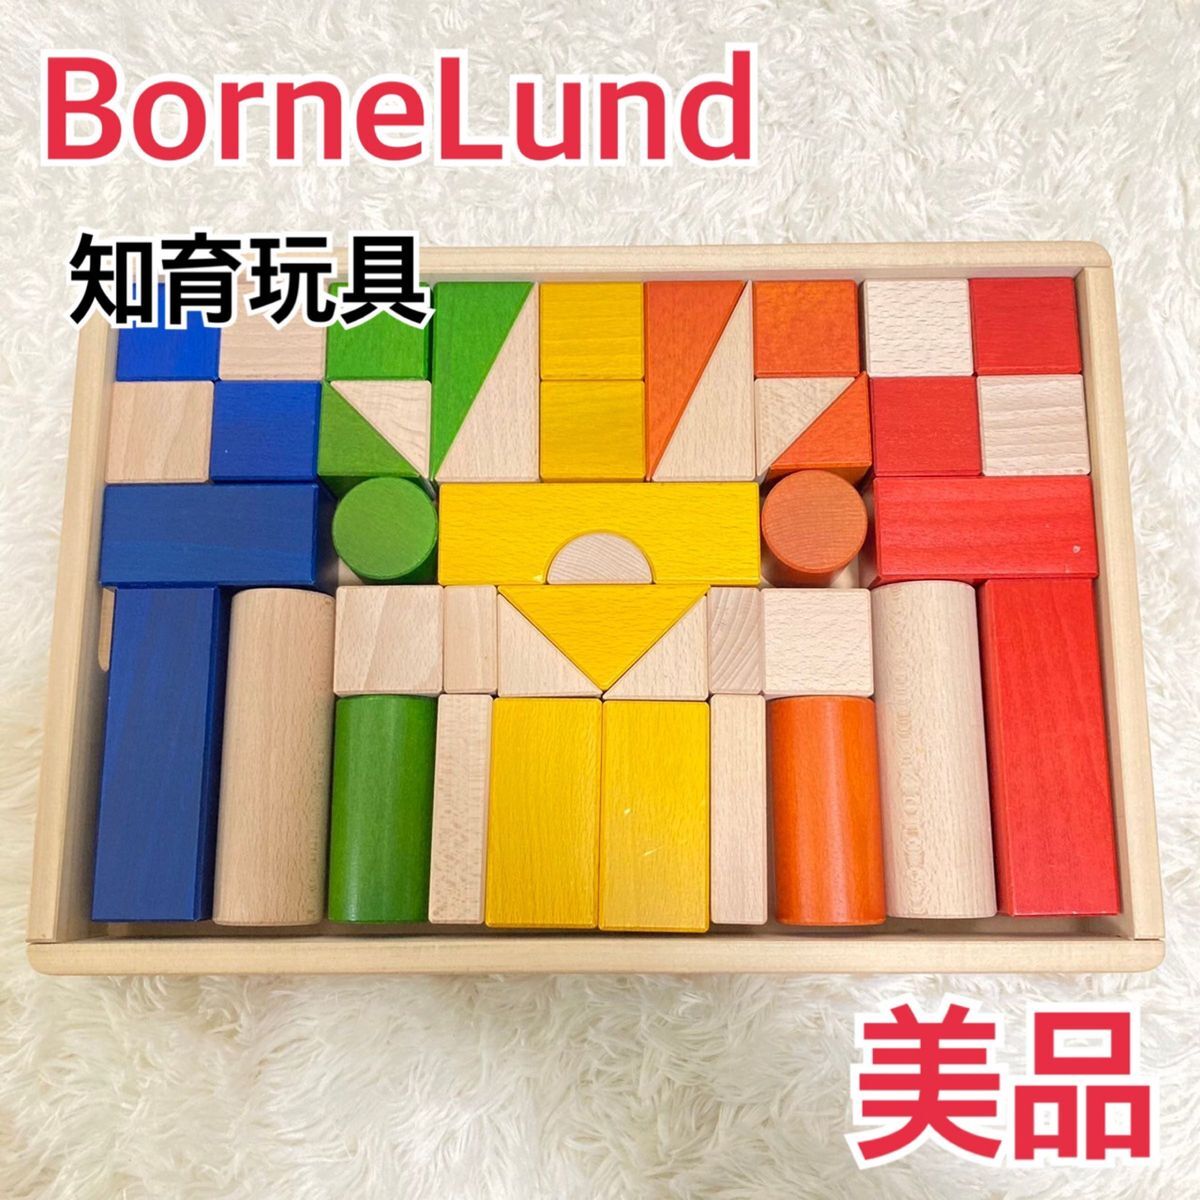 【美品】ボーネルンド 積み木 カラー 木製 知育玩具BorneLund_画像1